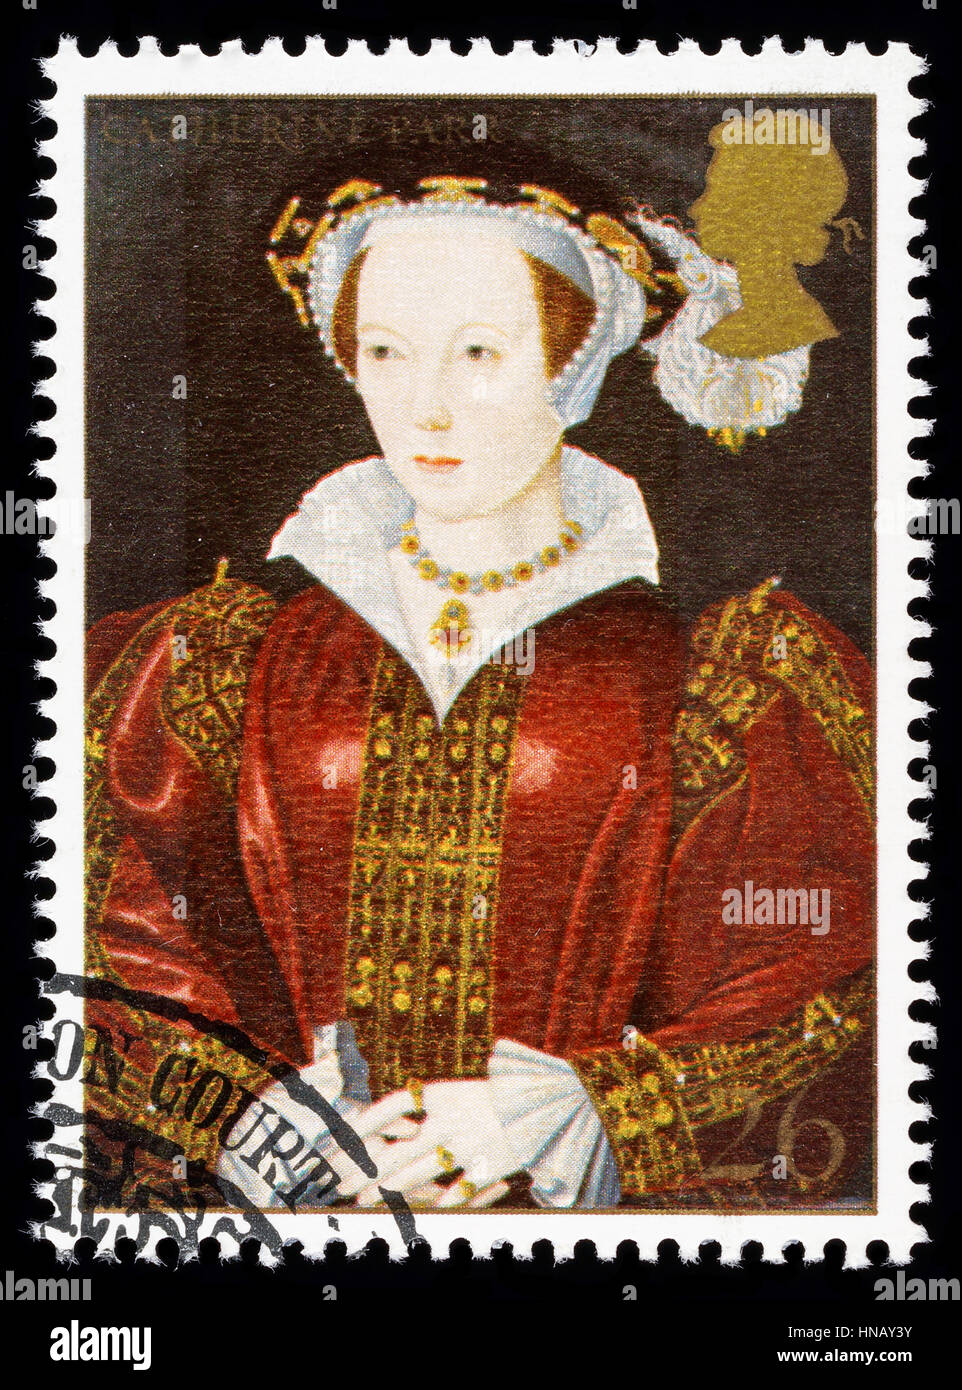 Regno Unito - circa 1997: usato francobollo stampato in Gran Bretagna per commemorare il Re Enrico VIII mostra Catherine Parr una delle sue numerose mogli Foto Stock